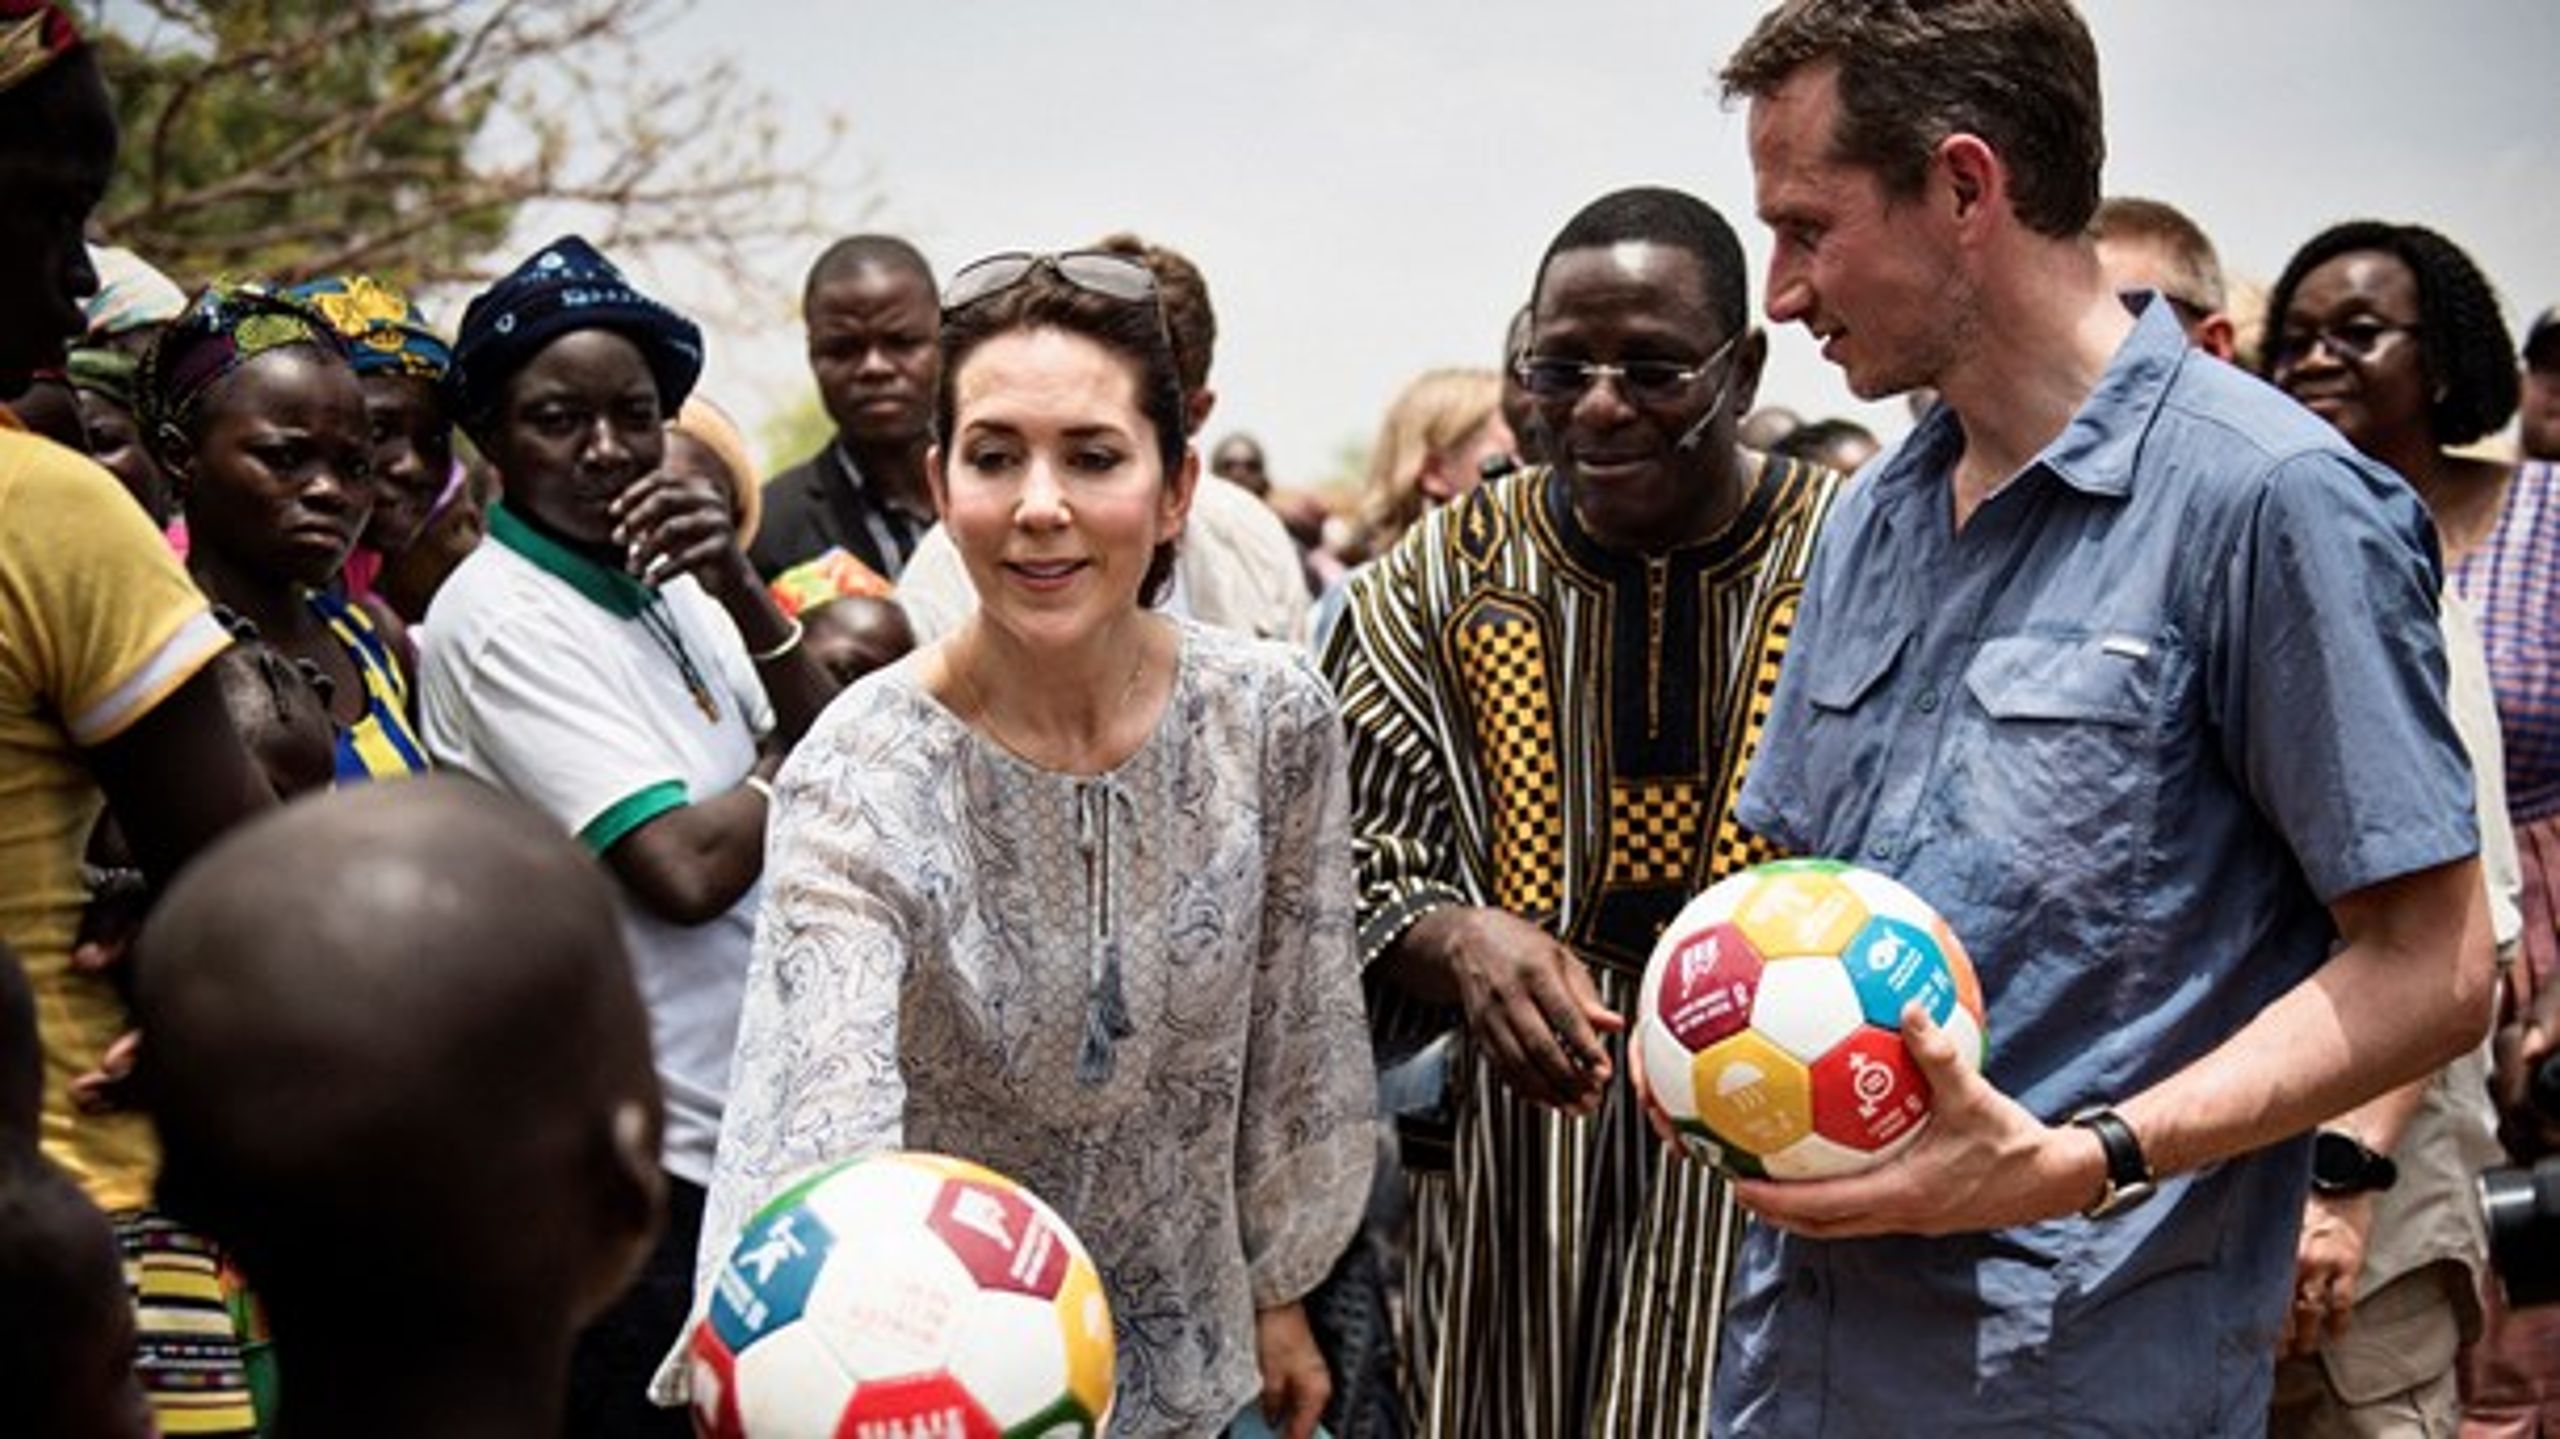 FN's verdensmål for bæredygtig udvikling kan i disse dage fejre femårs fødselsdag. Her er det tidligere udenrigsminister Kristian Jensen (V) og Kronprinsesse Mary, der spiller bold og promoverer målene på et besøg i Burkina Faso i 2016.&nbsp;